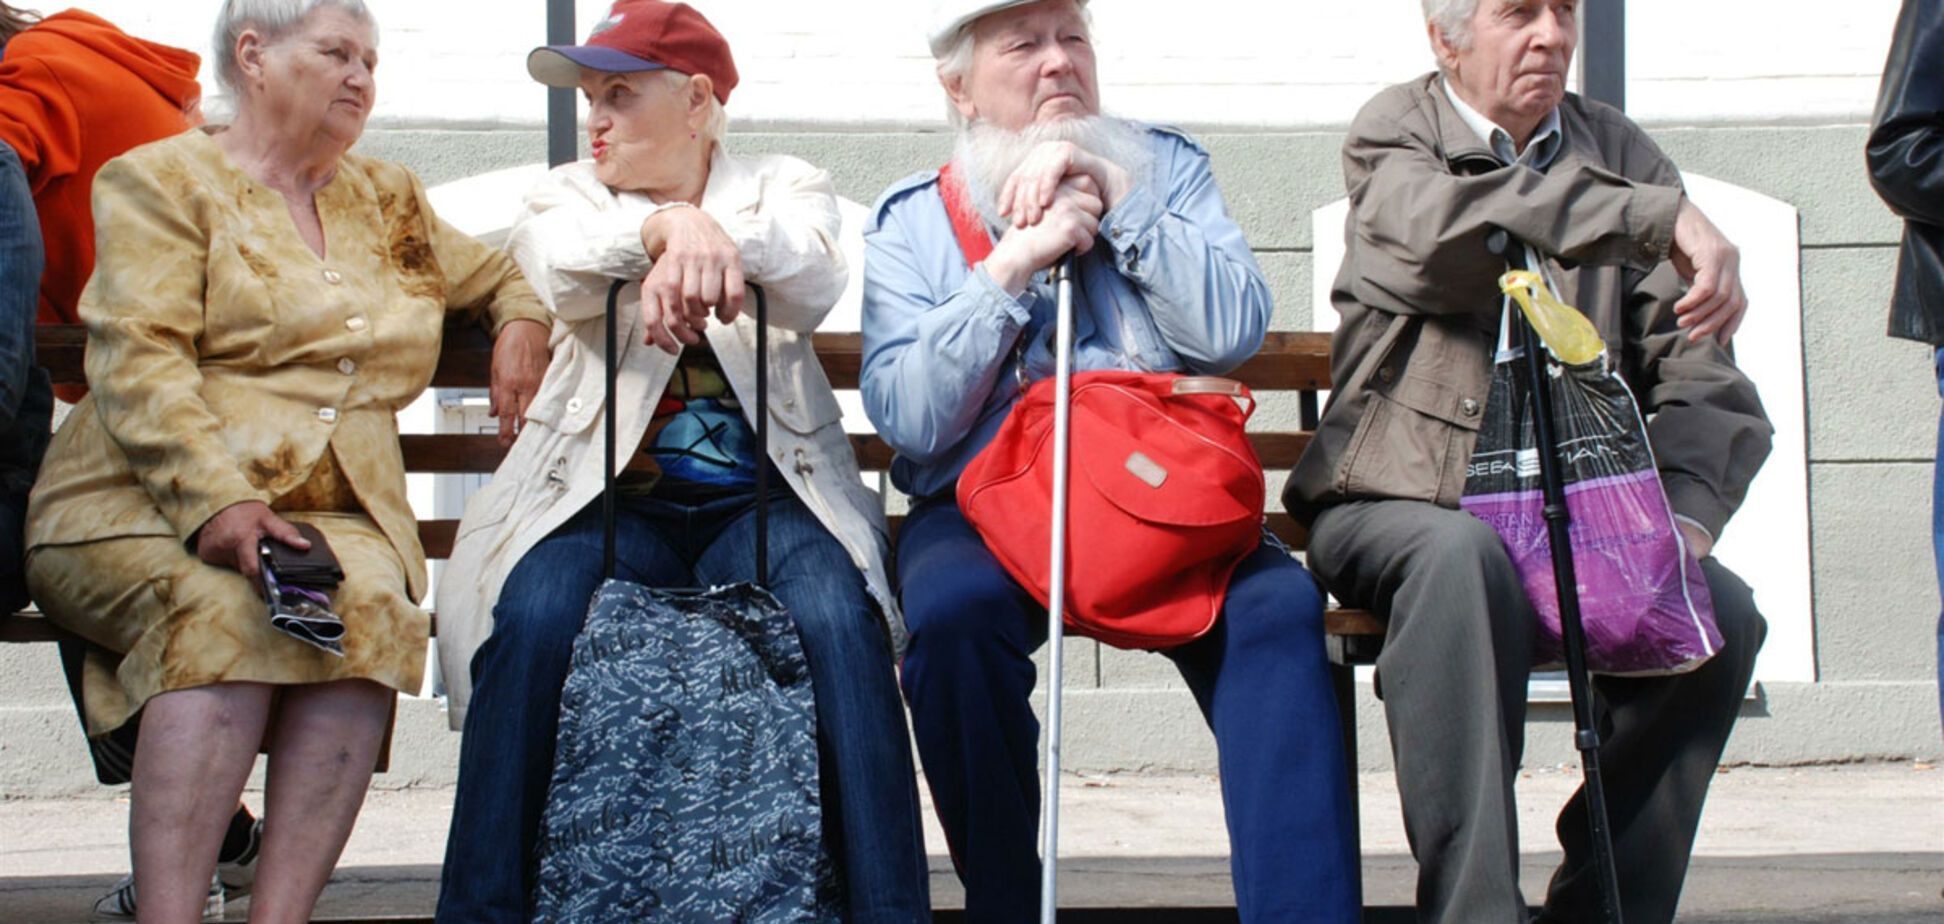 Ракеты для них важнее пенсии? Названы особенности менталитета пенсионеров в РФ